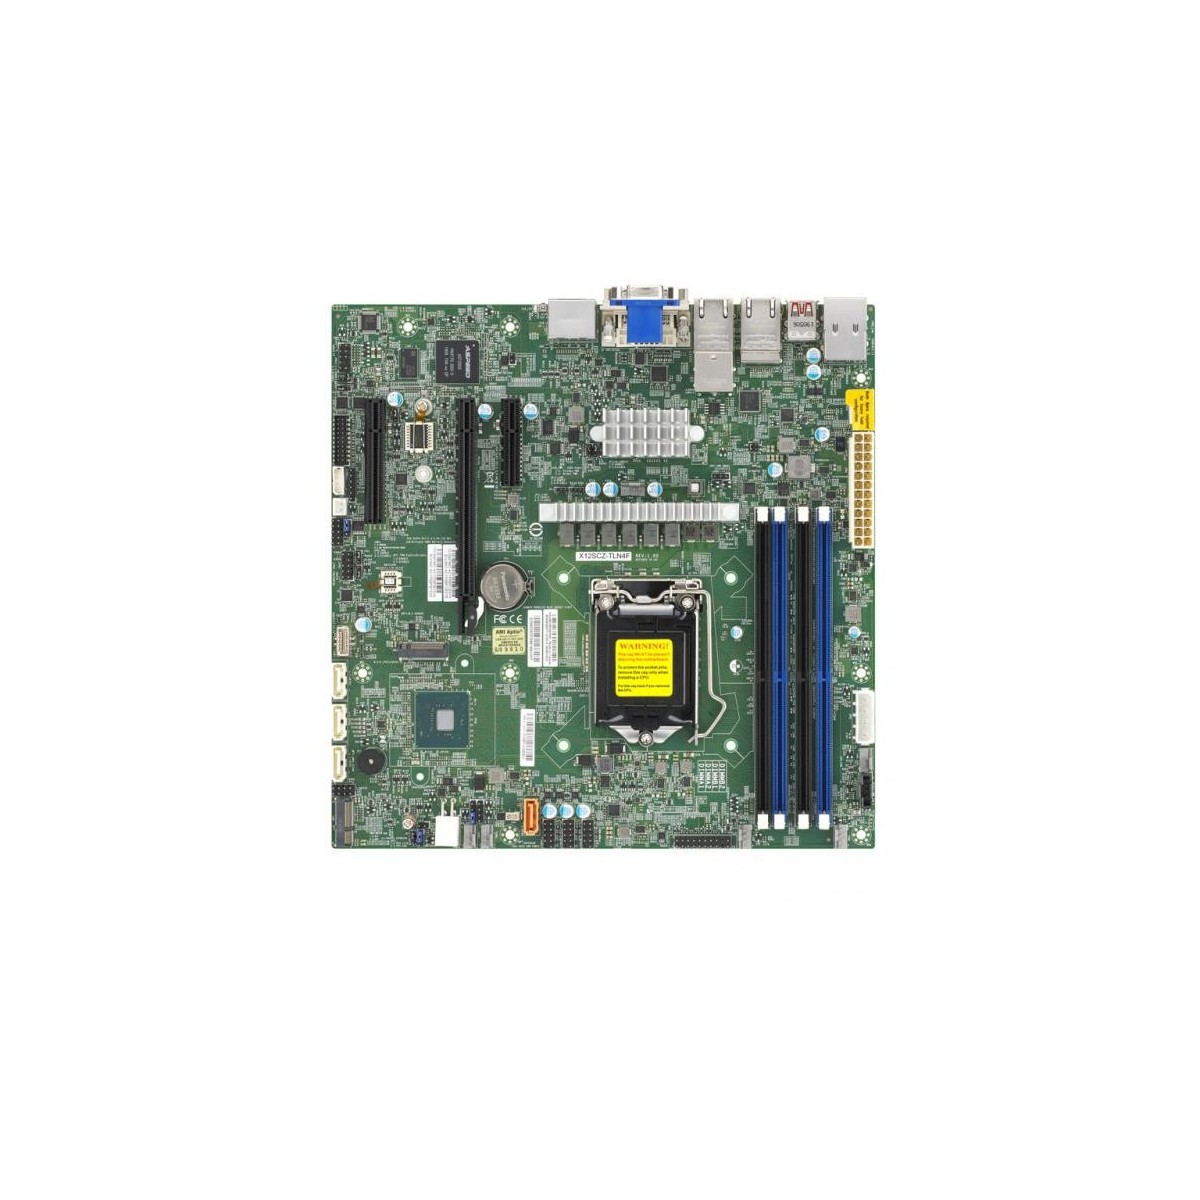 Supermicro mainboard server MBD-X12SCZ-TLN4F-O, E3-1200 v6/v5 CPU, 4 DIMM slots, 1 PCI-E 3.0 x16 (in x16), 2 PCI-E 3.0 x4 (in x8